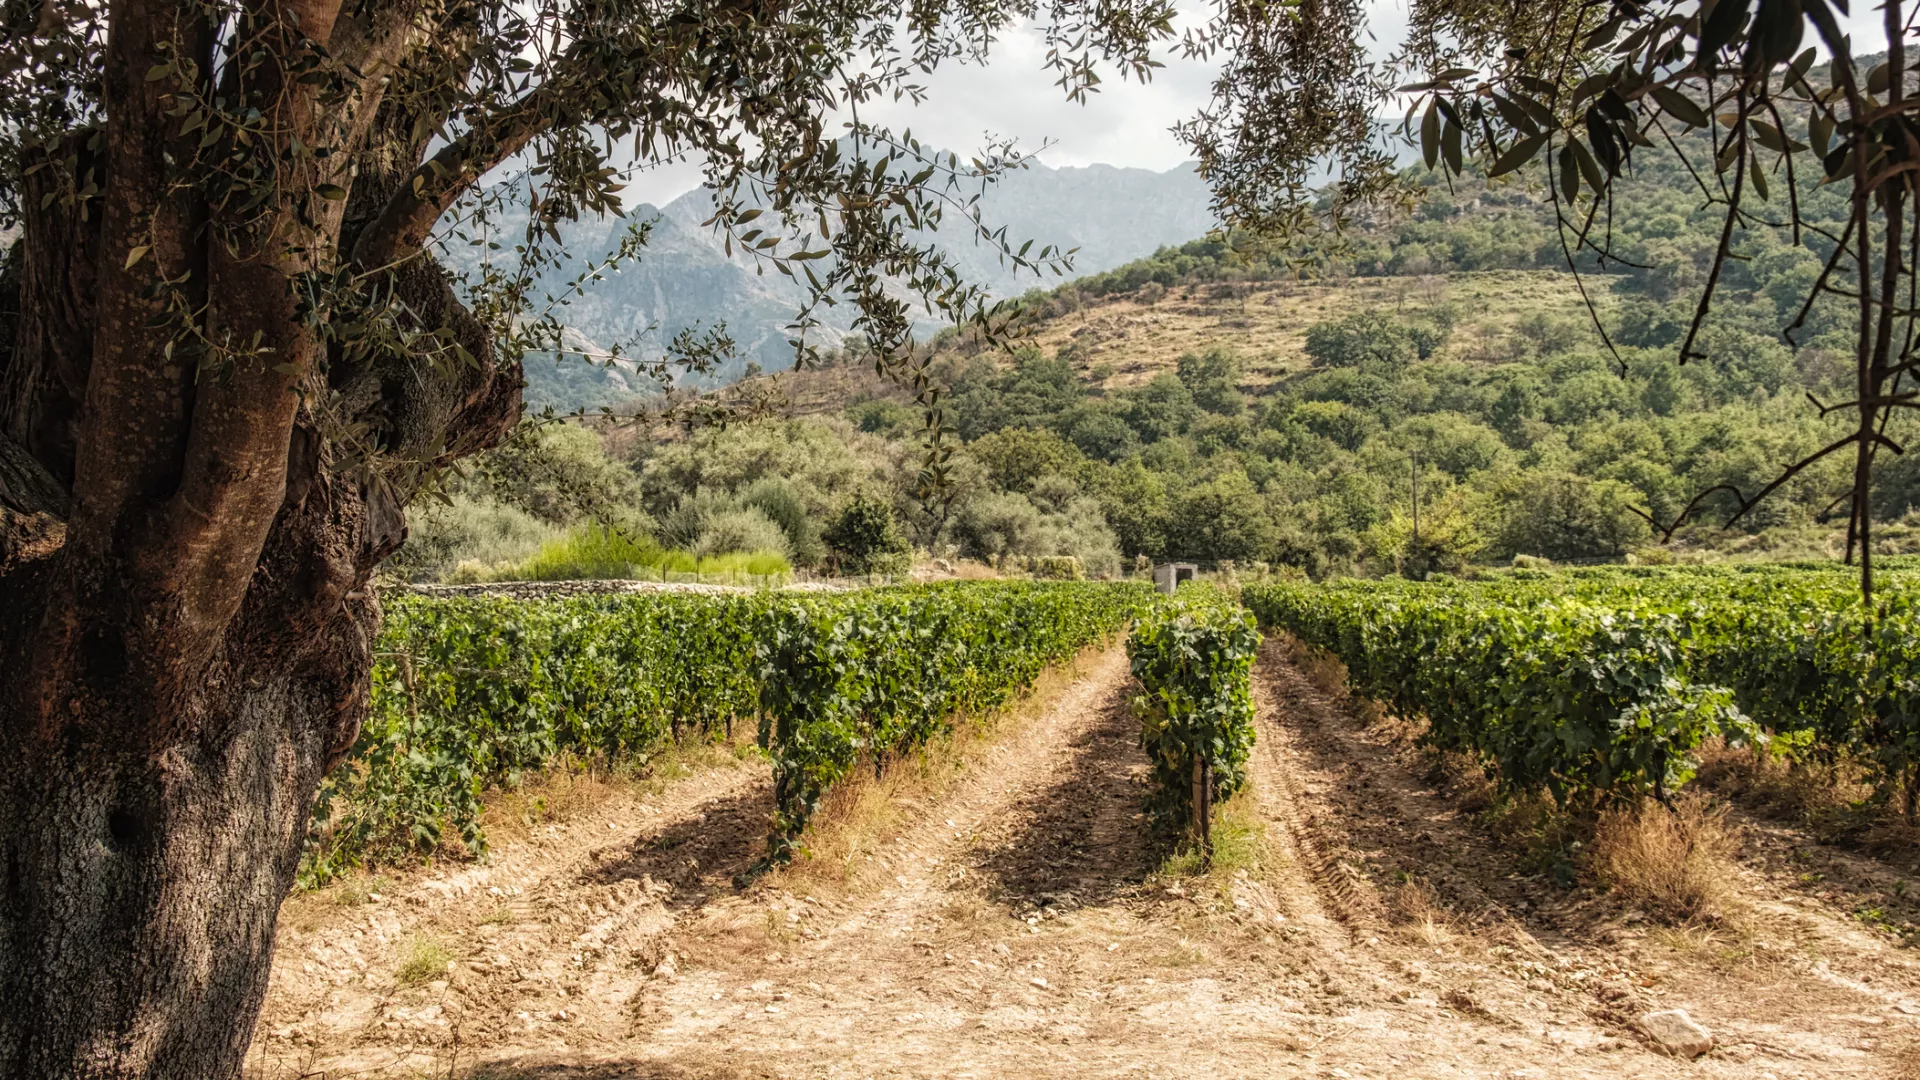 Vignoble Corse